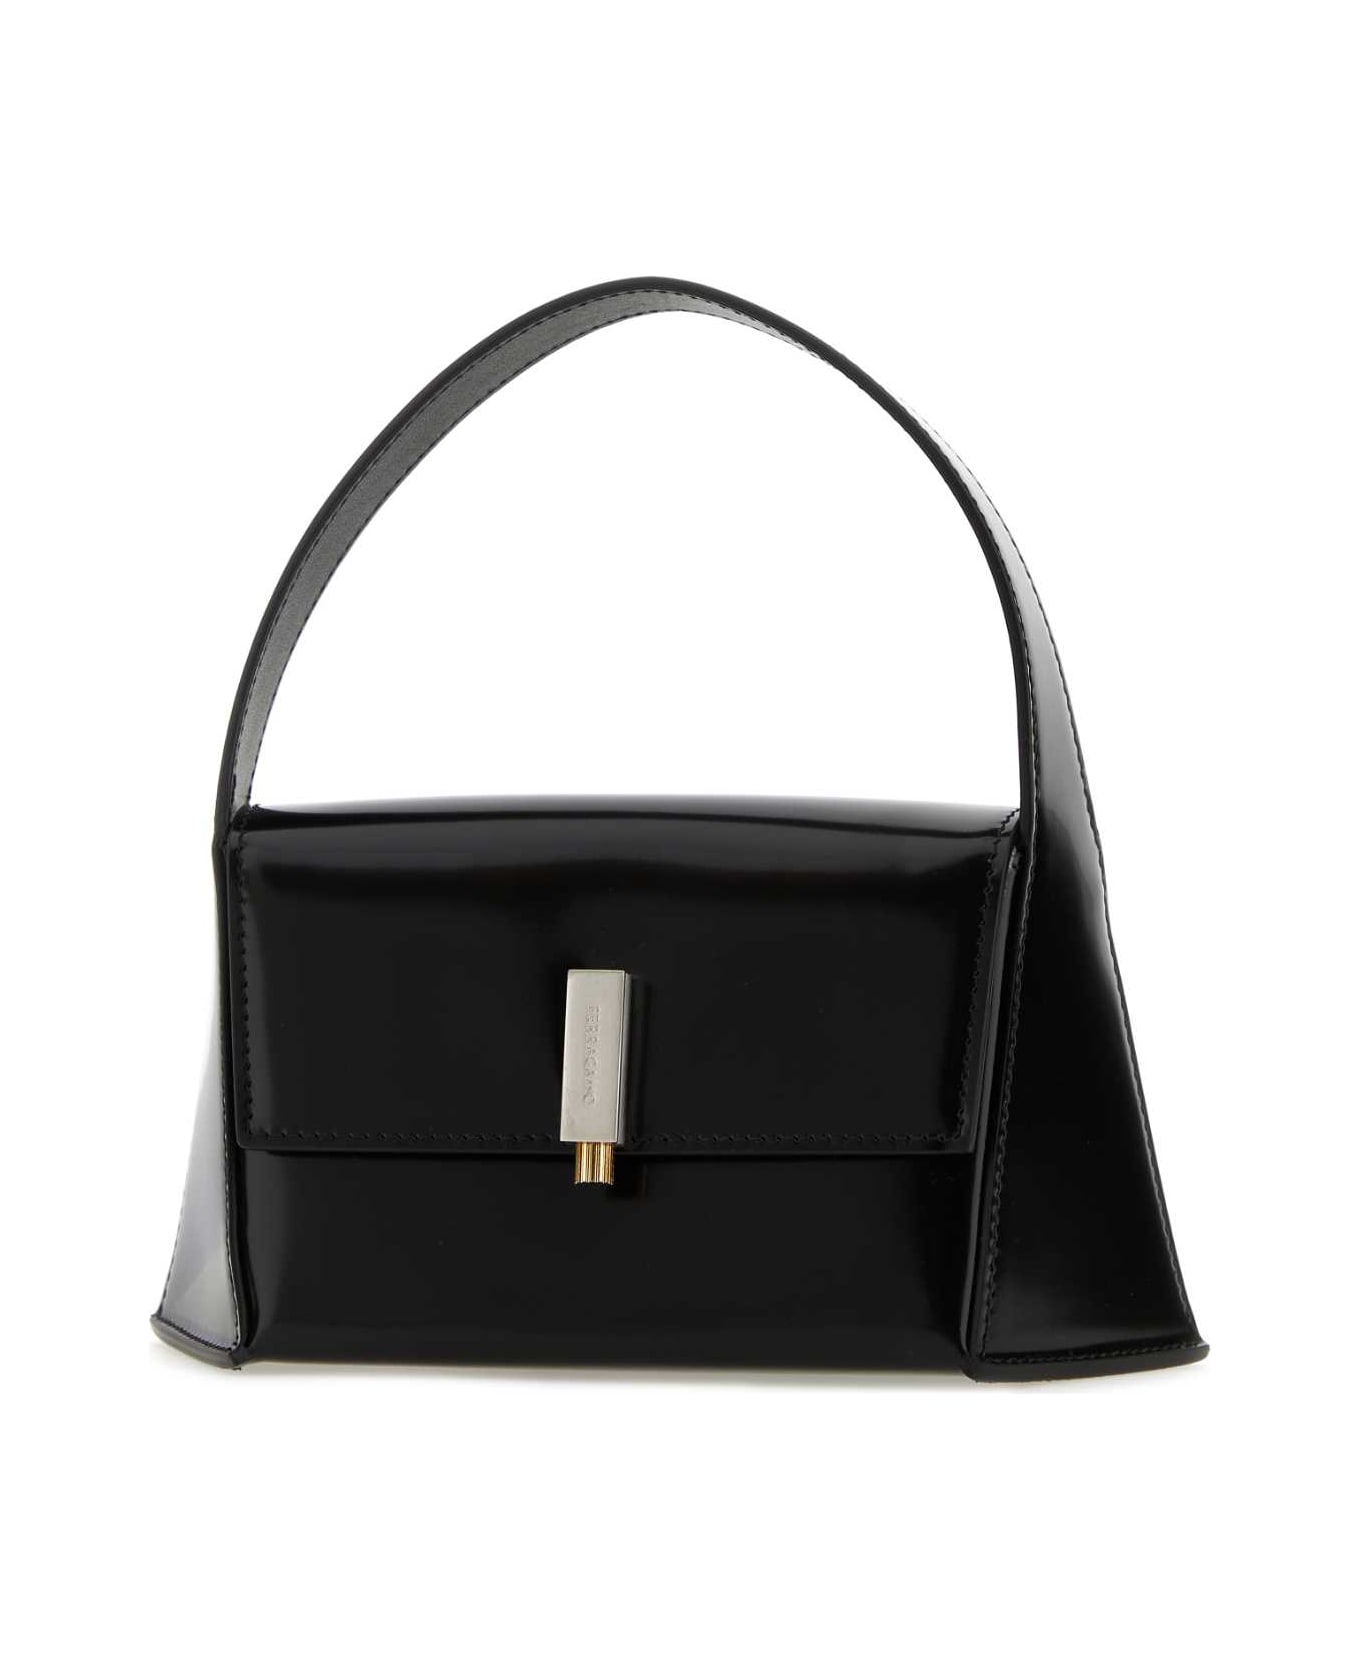 Ferragamo Black Leather Mini Prisma Handbag - NERO